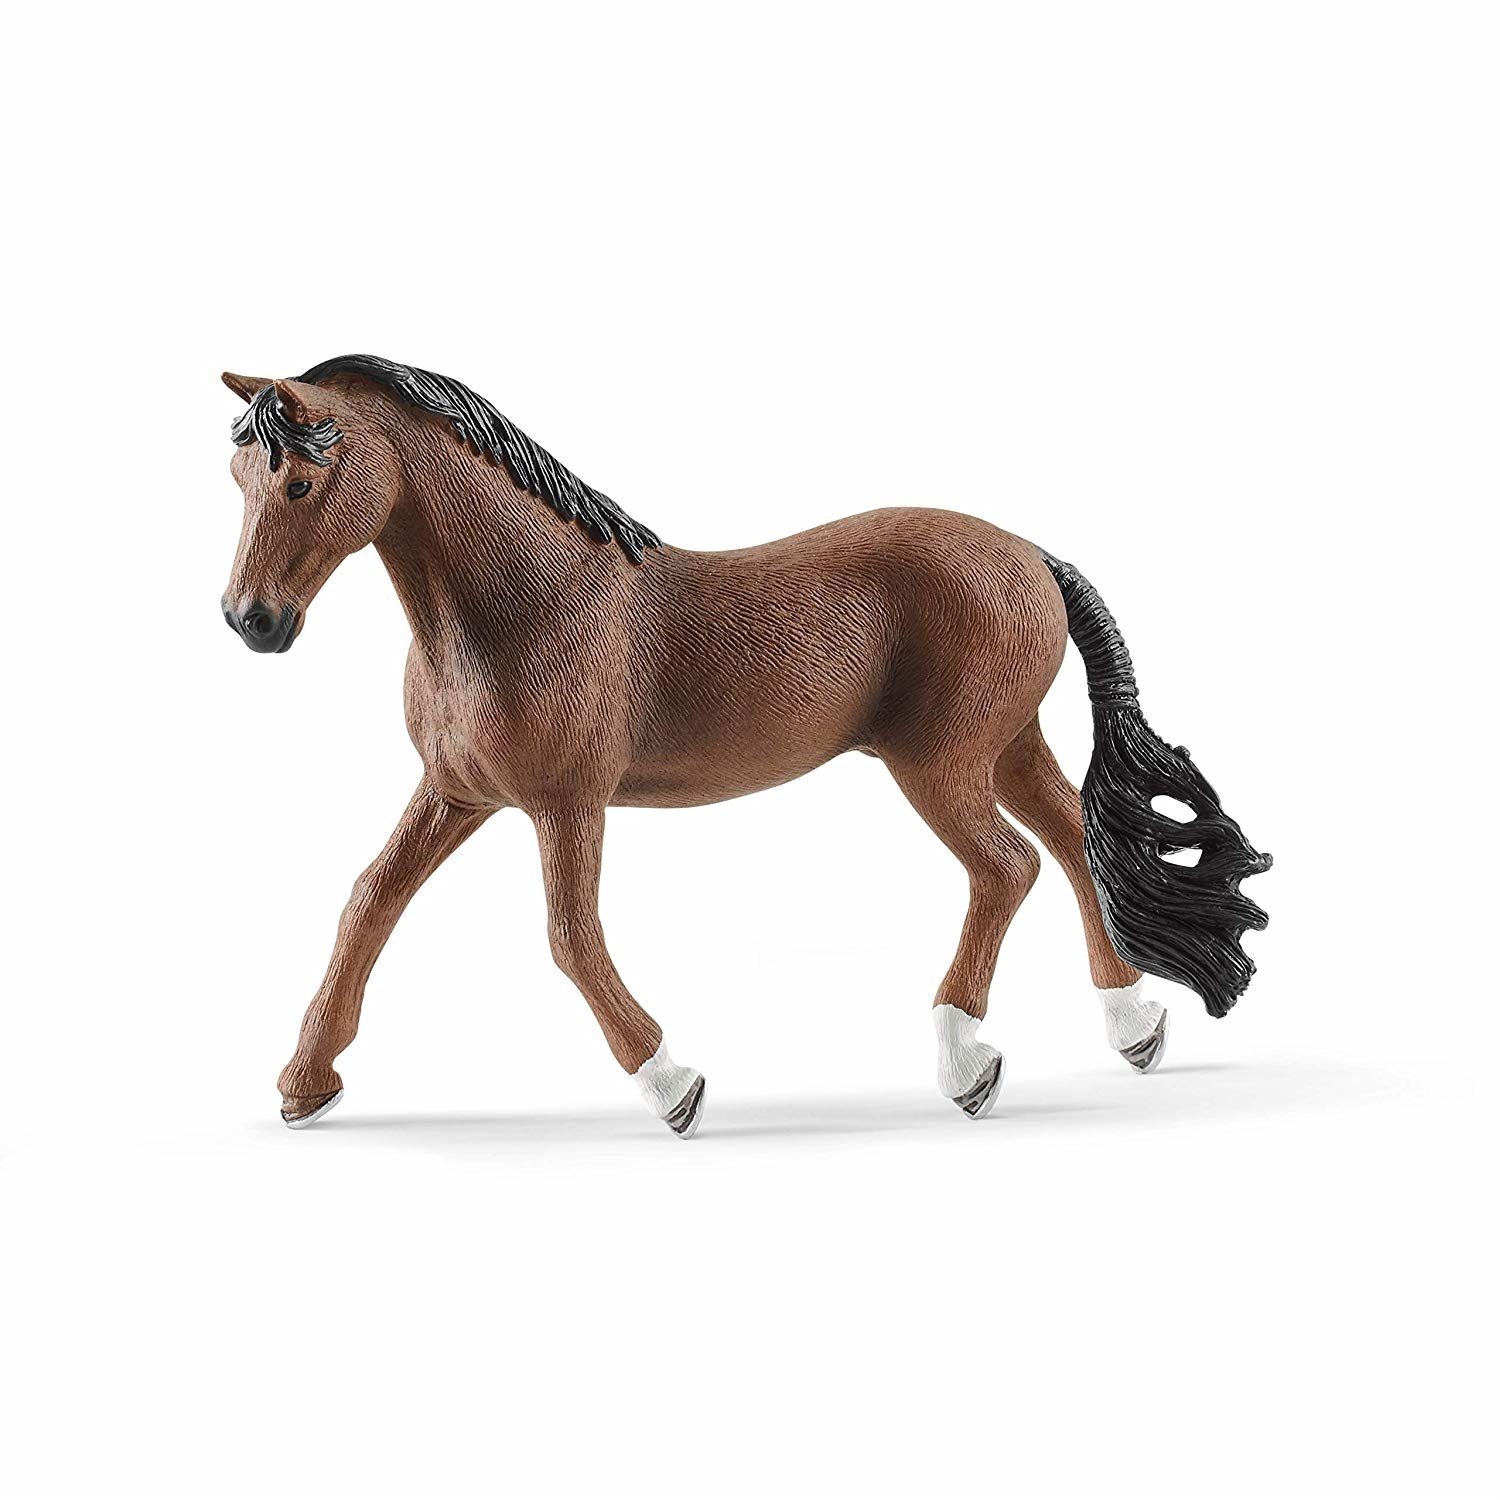 Decke Tierfigur Wallach Schleich® Club Set 13909-42459-89 3er Trakehner Horse +